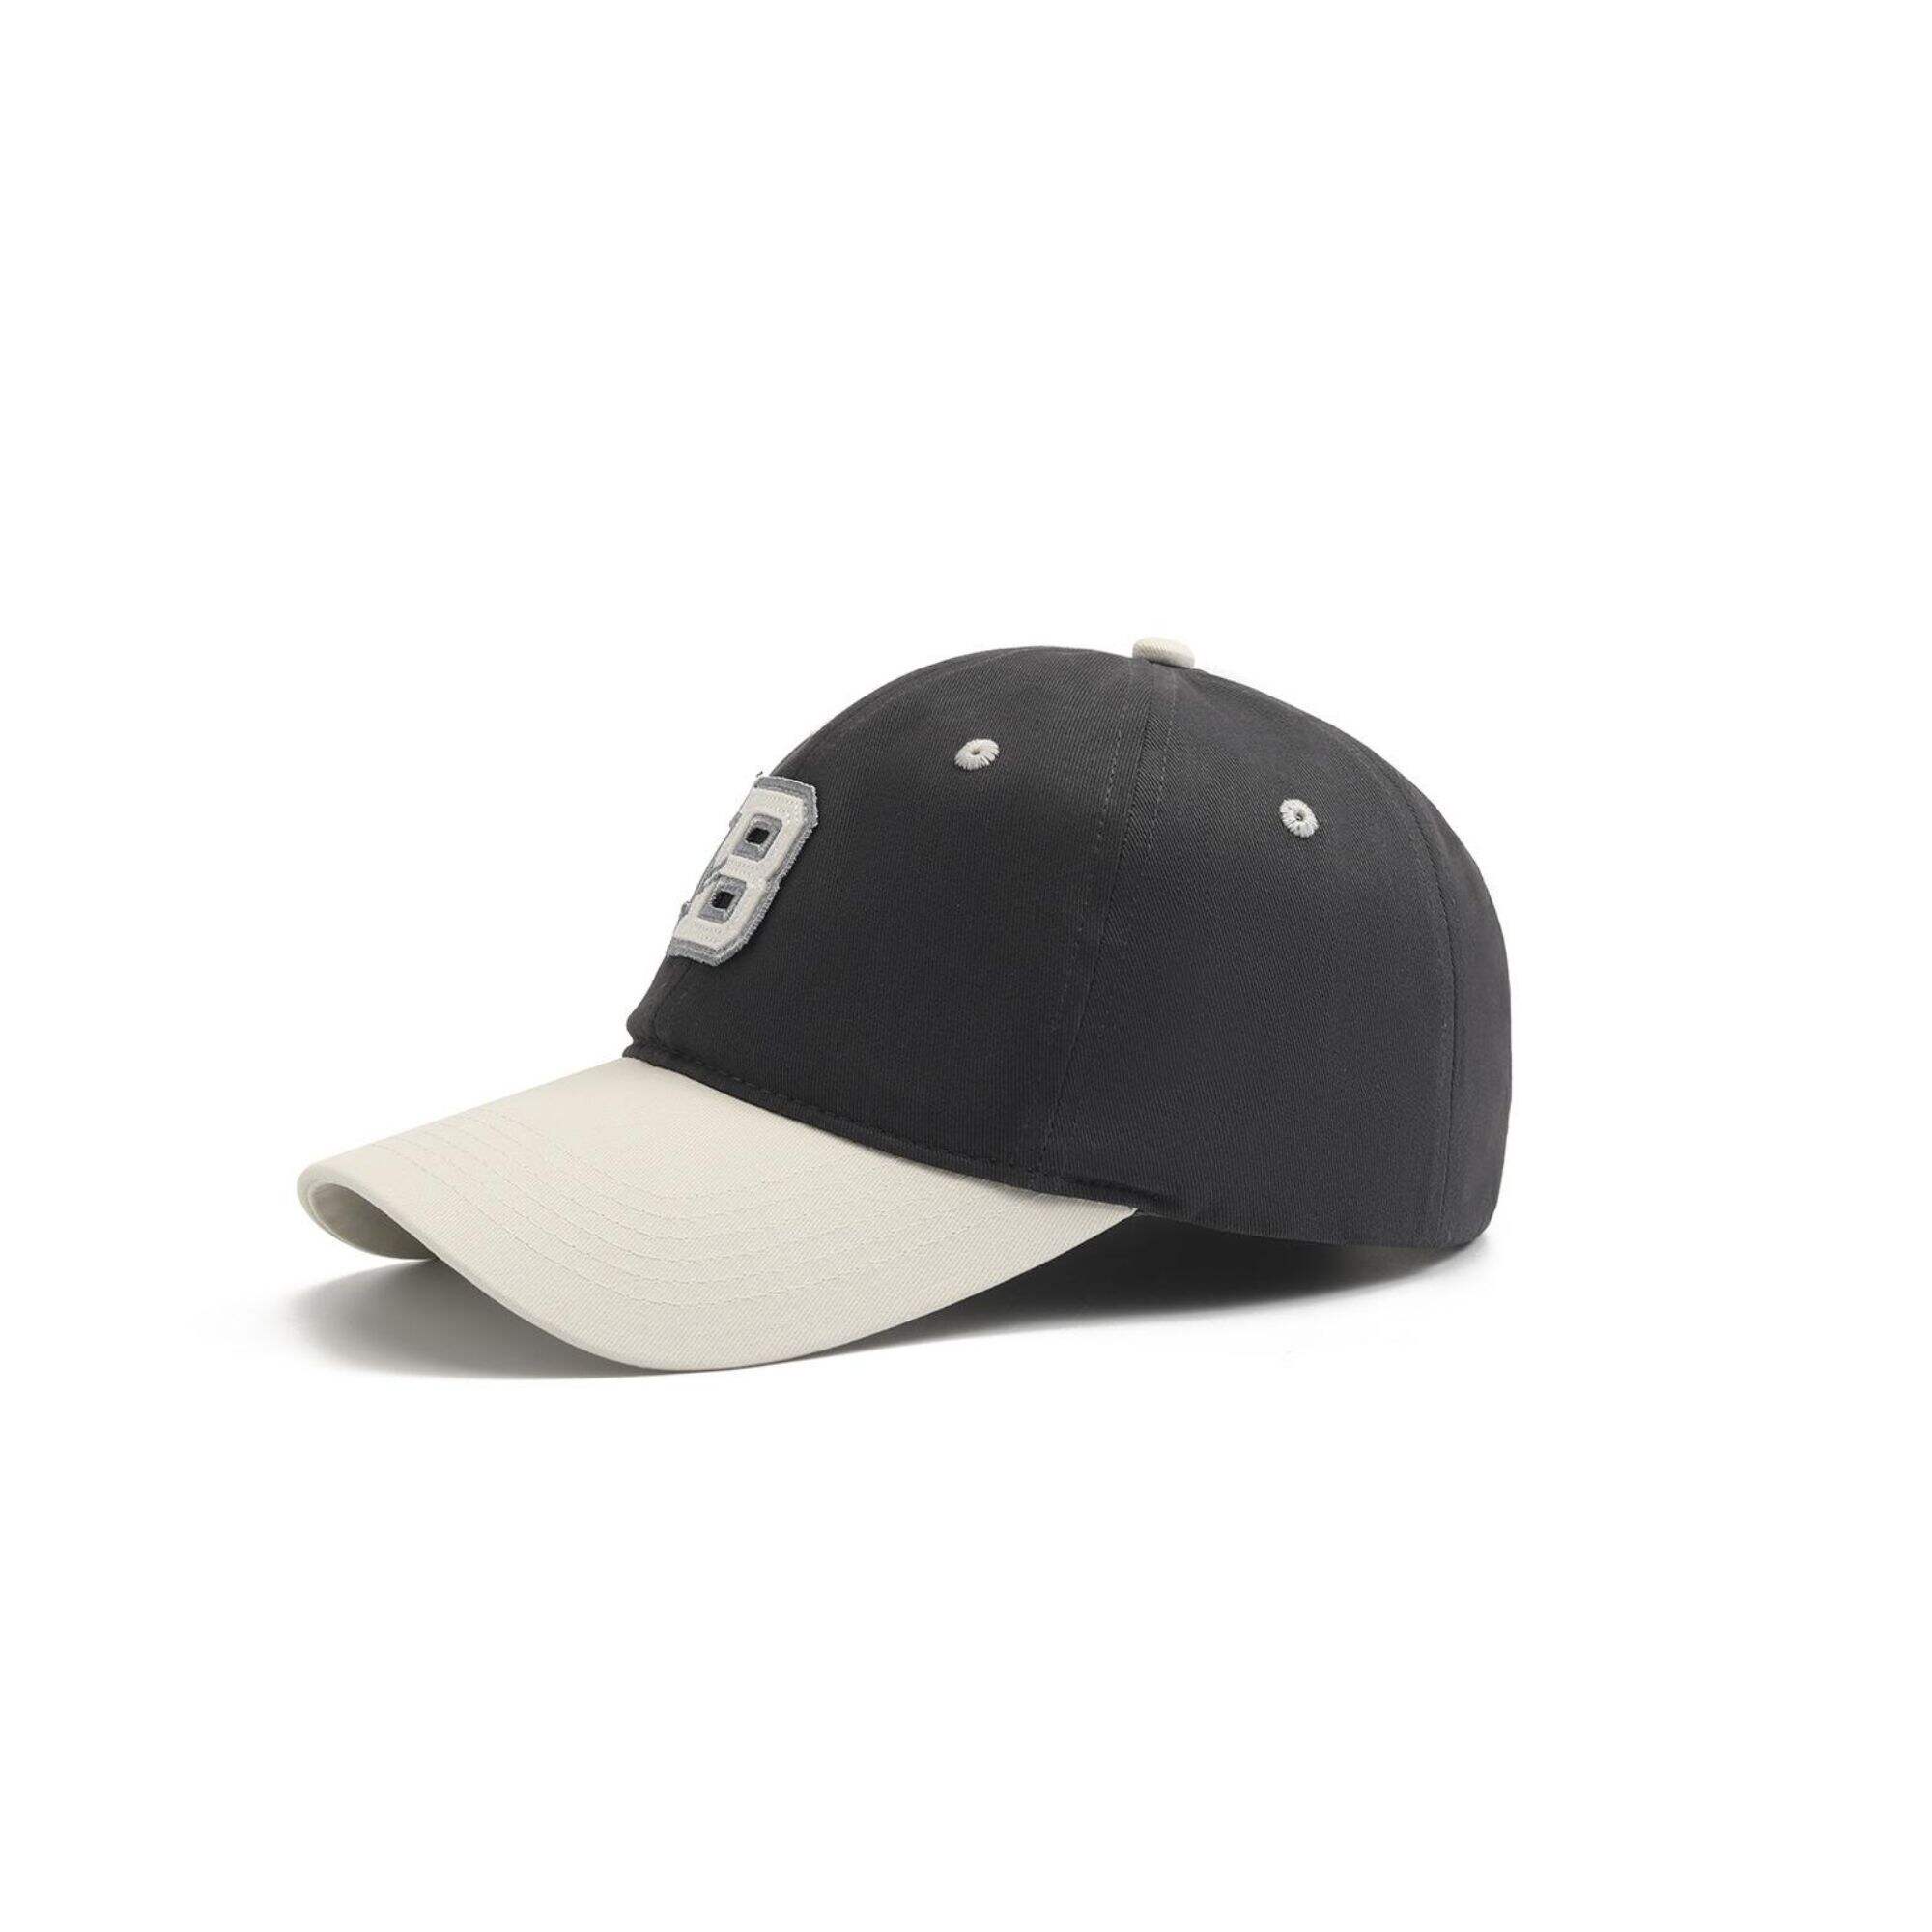 Custom letter logo baseball cap